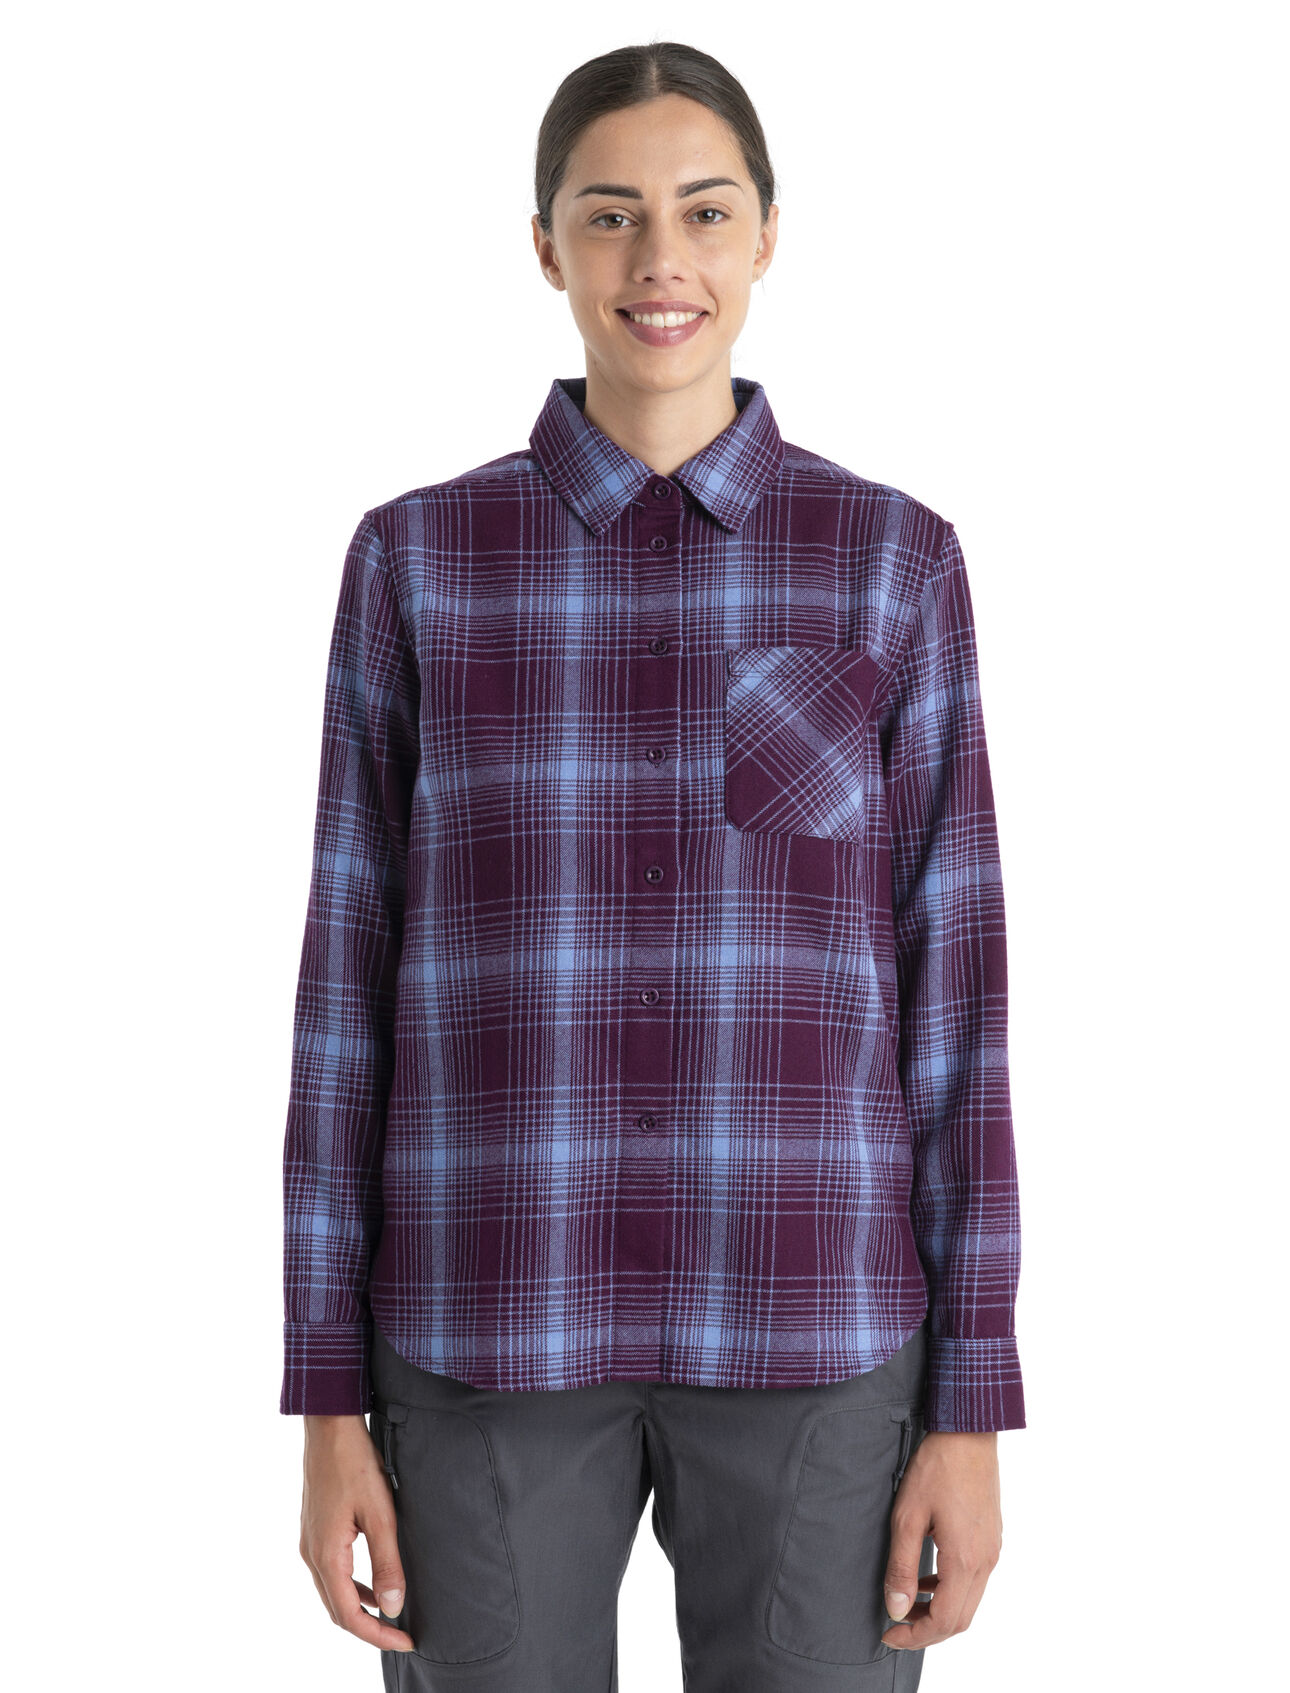 Dam 200 Dawnder långärmad rutig flanellskjorta i merino 200 Dawnder långärmad flanellskjorta med rutmönster är en mjuk och mysig vinterskjorta som är tillverkad av 100 % merinoull. Det är ett tidlöst basplagg för varje vintergarderob. 